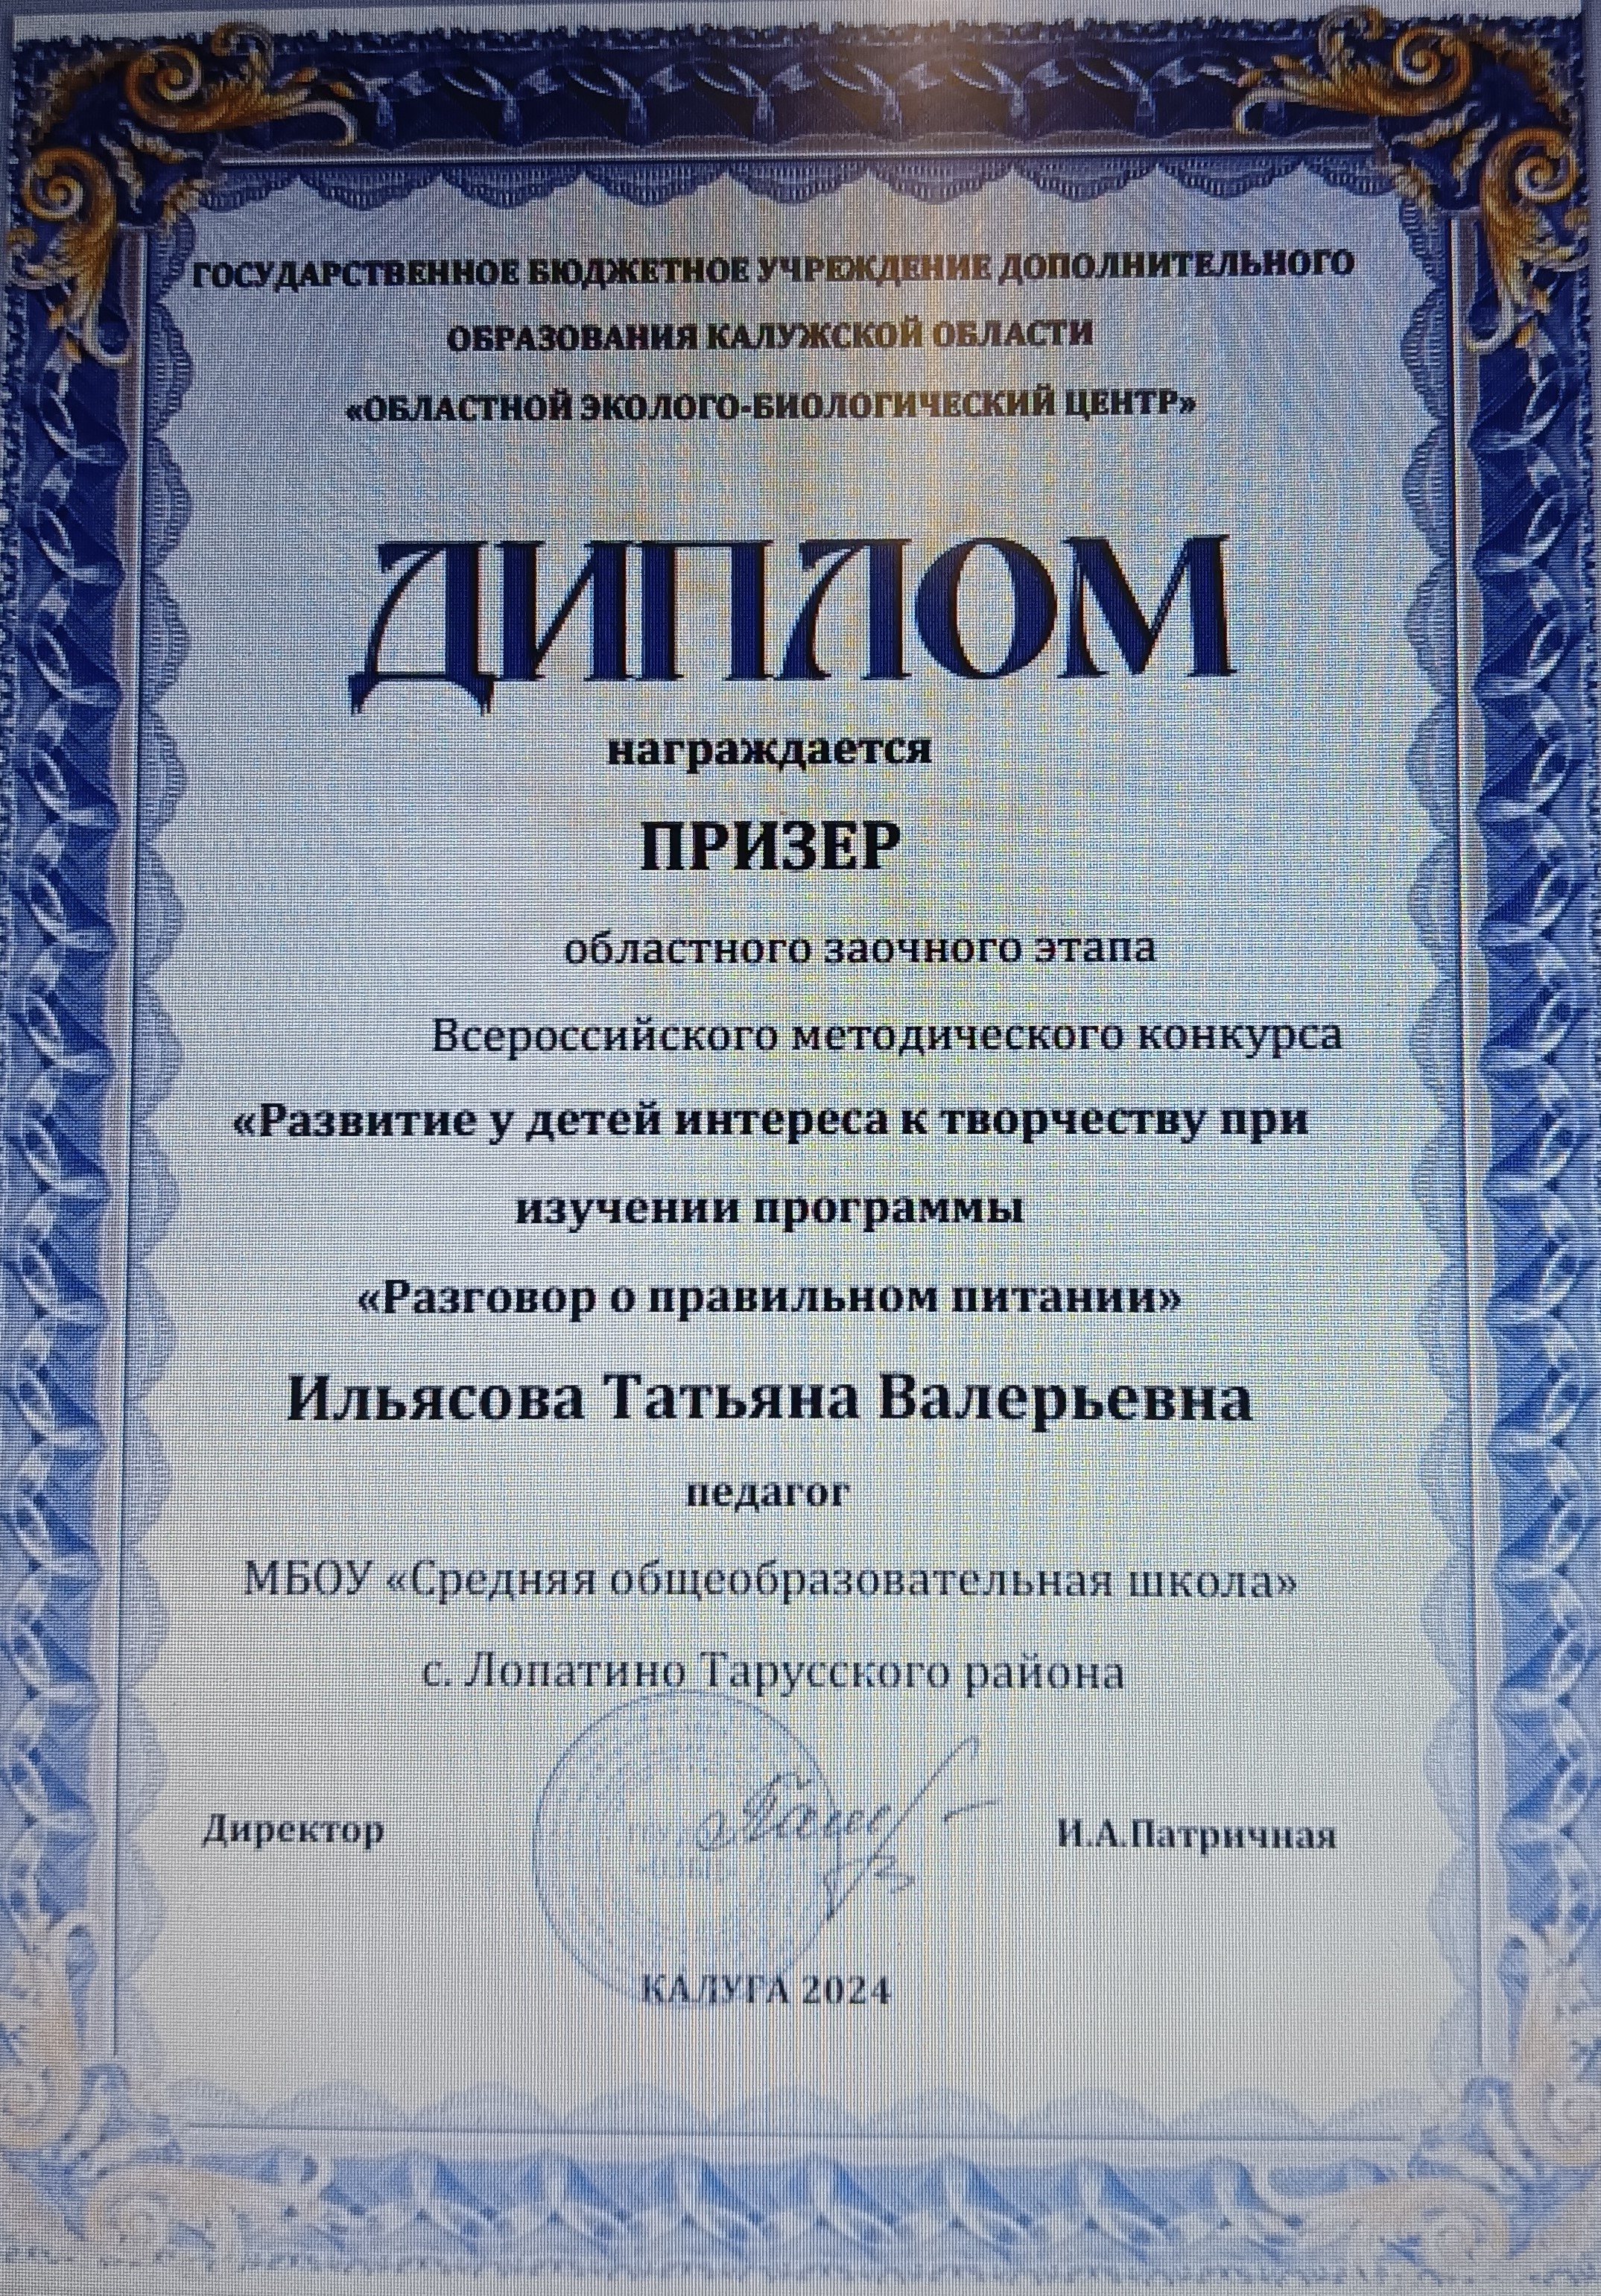 Диплом призера_ 2024.